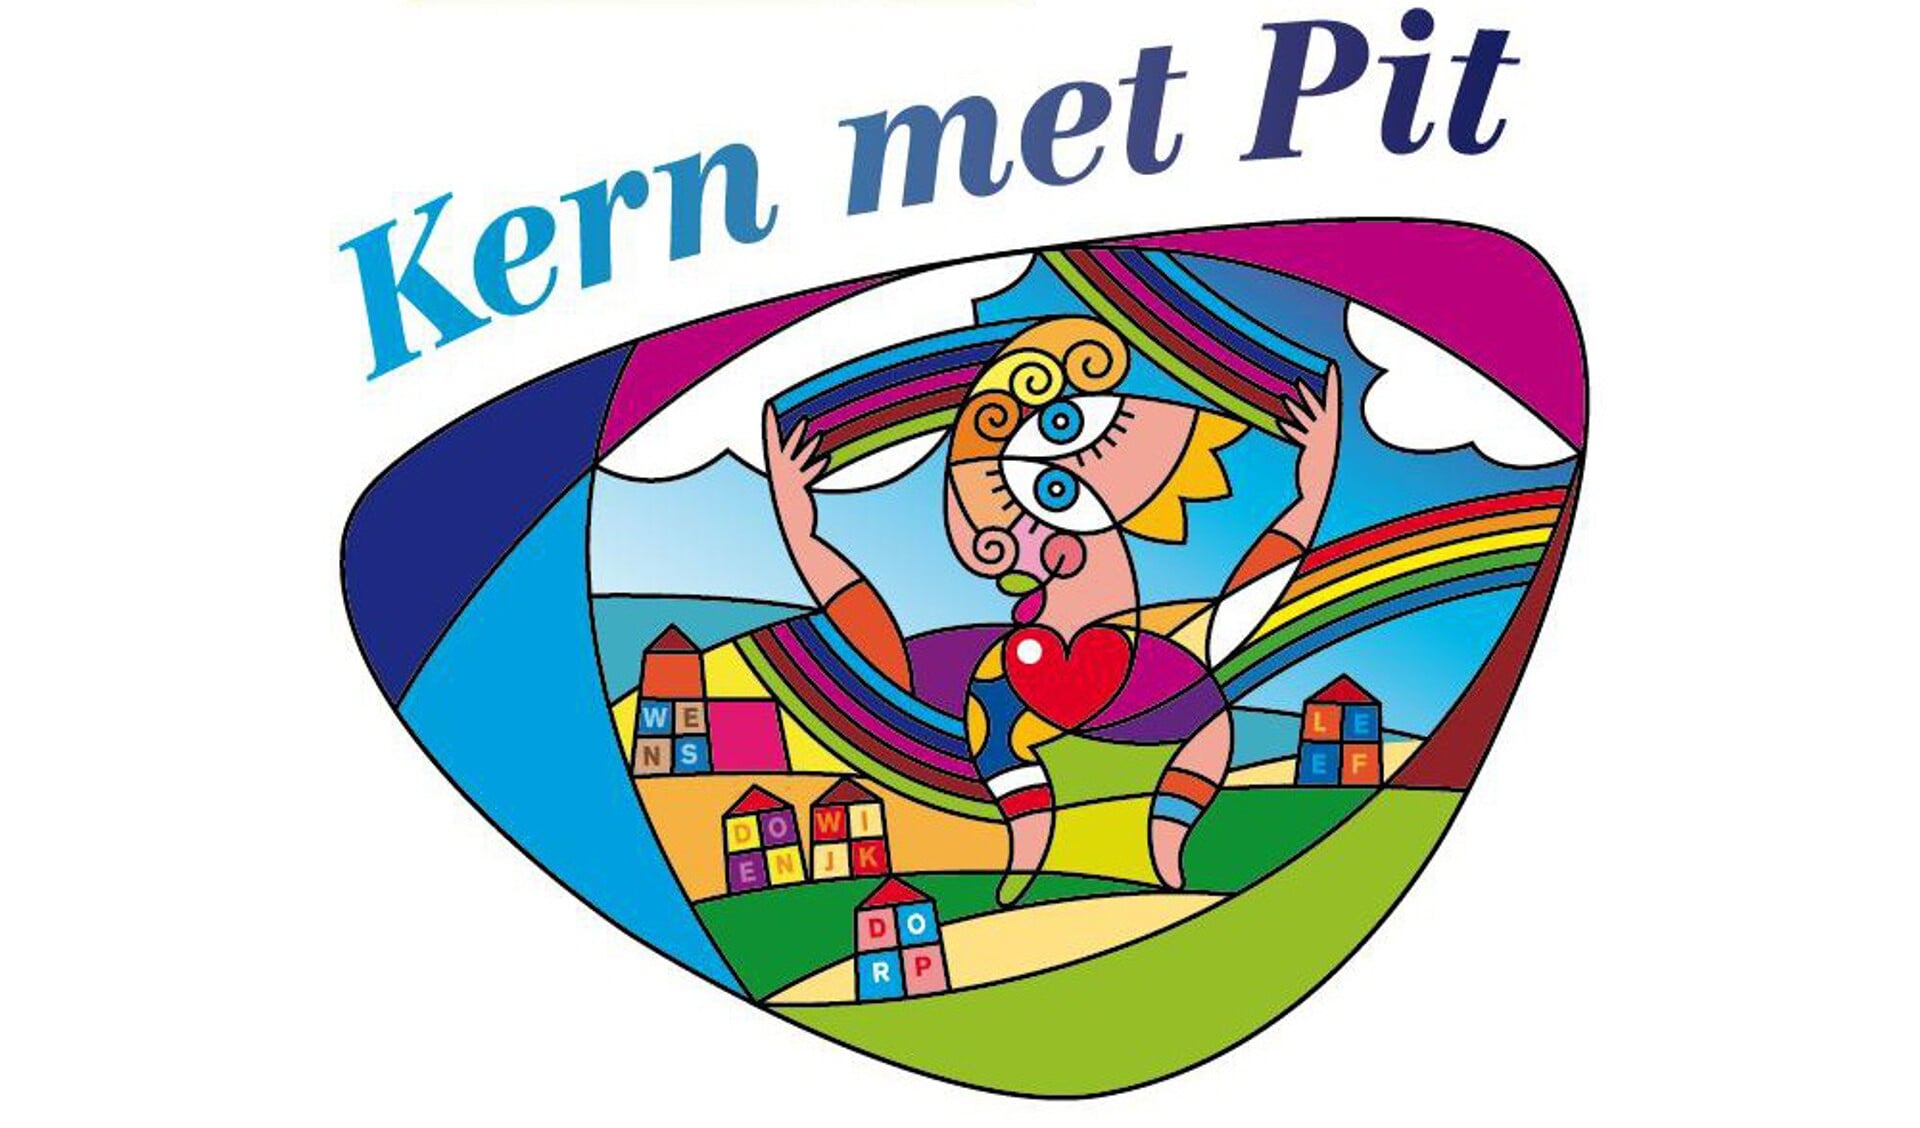 De wedstrijd Kern met Pit helpt bewoners die hun wijk mooier willen maken.